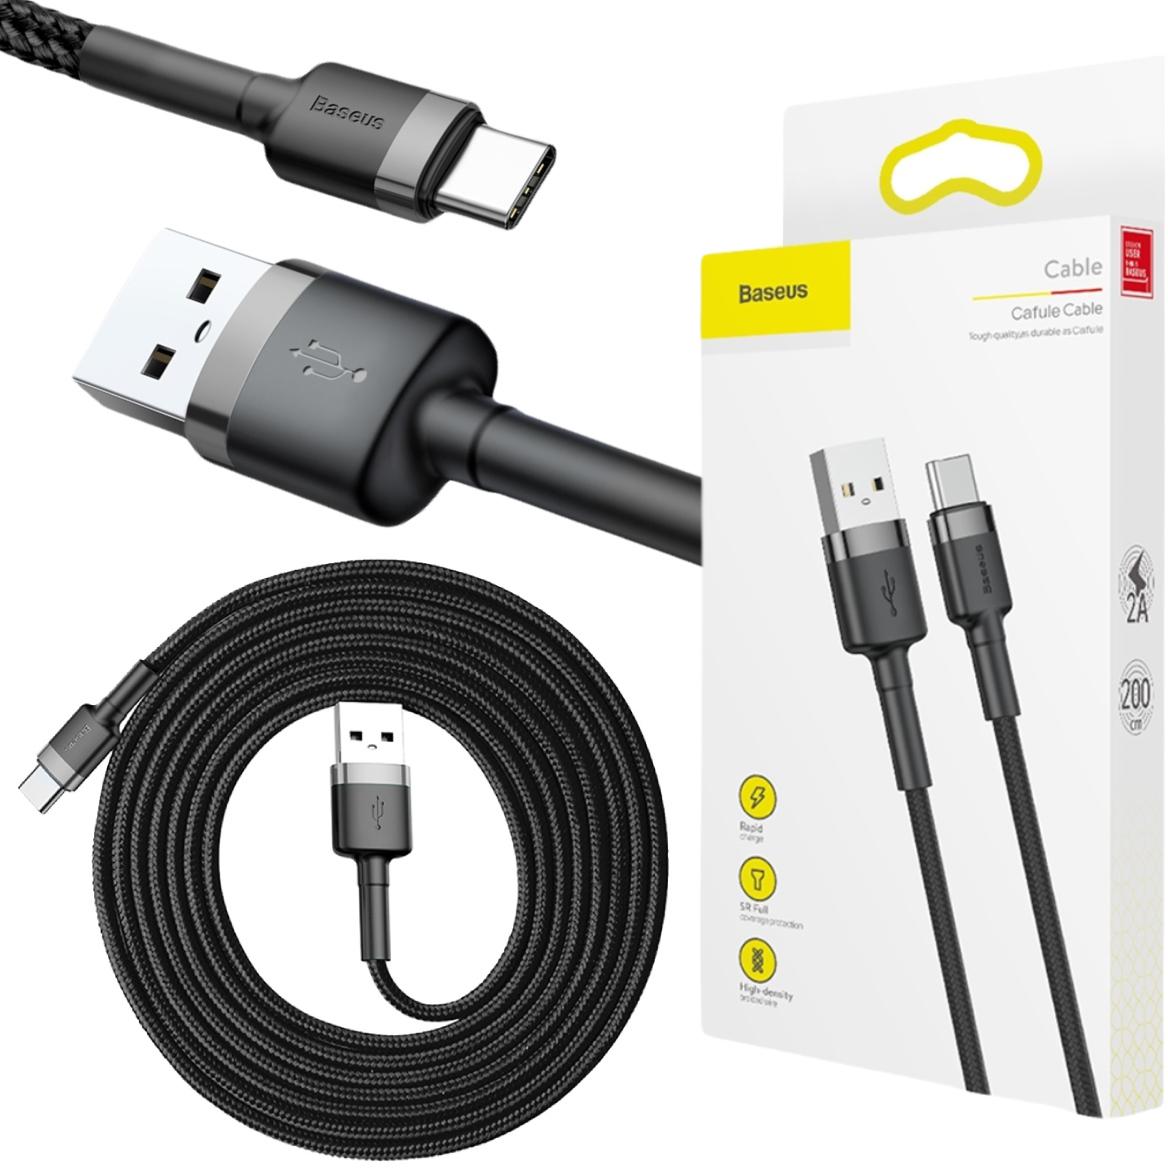 Baseus Cafule Cable wytrzymały nylonowy kabel przewód USB / USB-C QC3.0 2A 2m (CATKLF-CG1) - najważniejsze cechy: